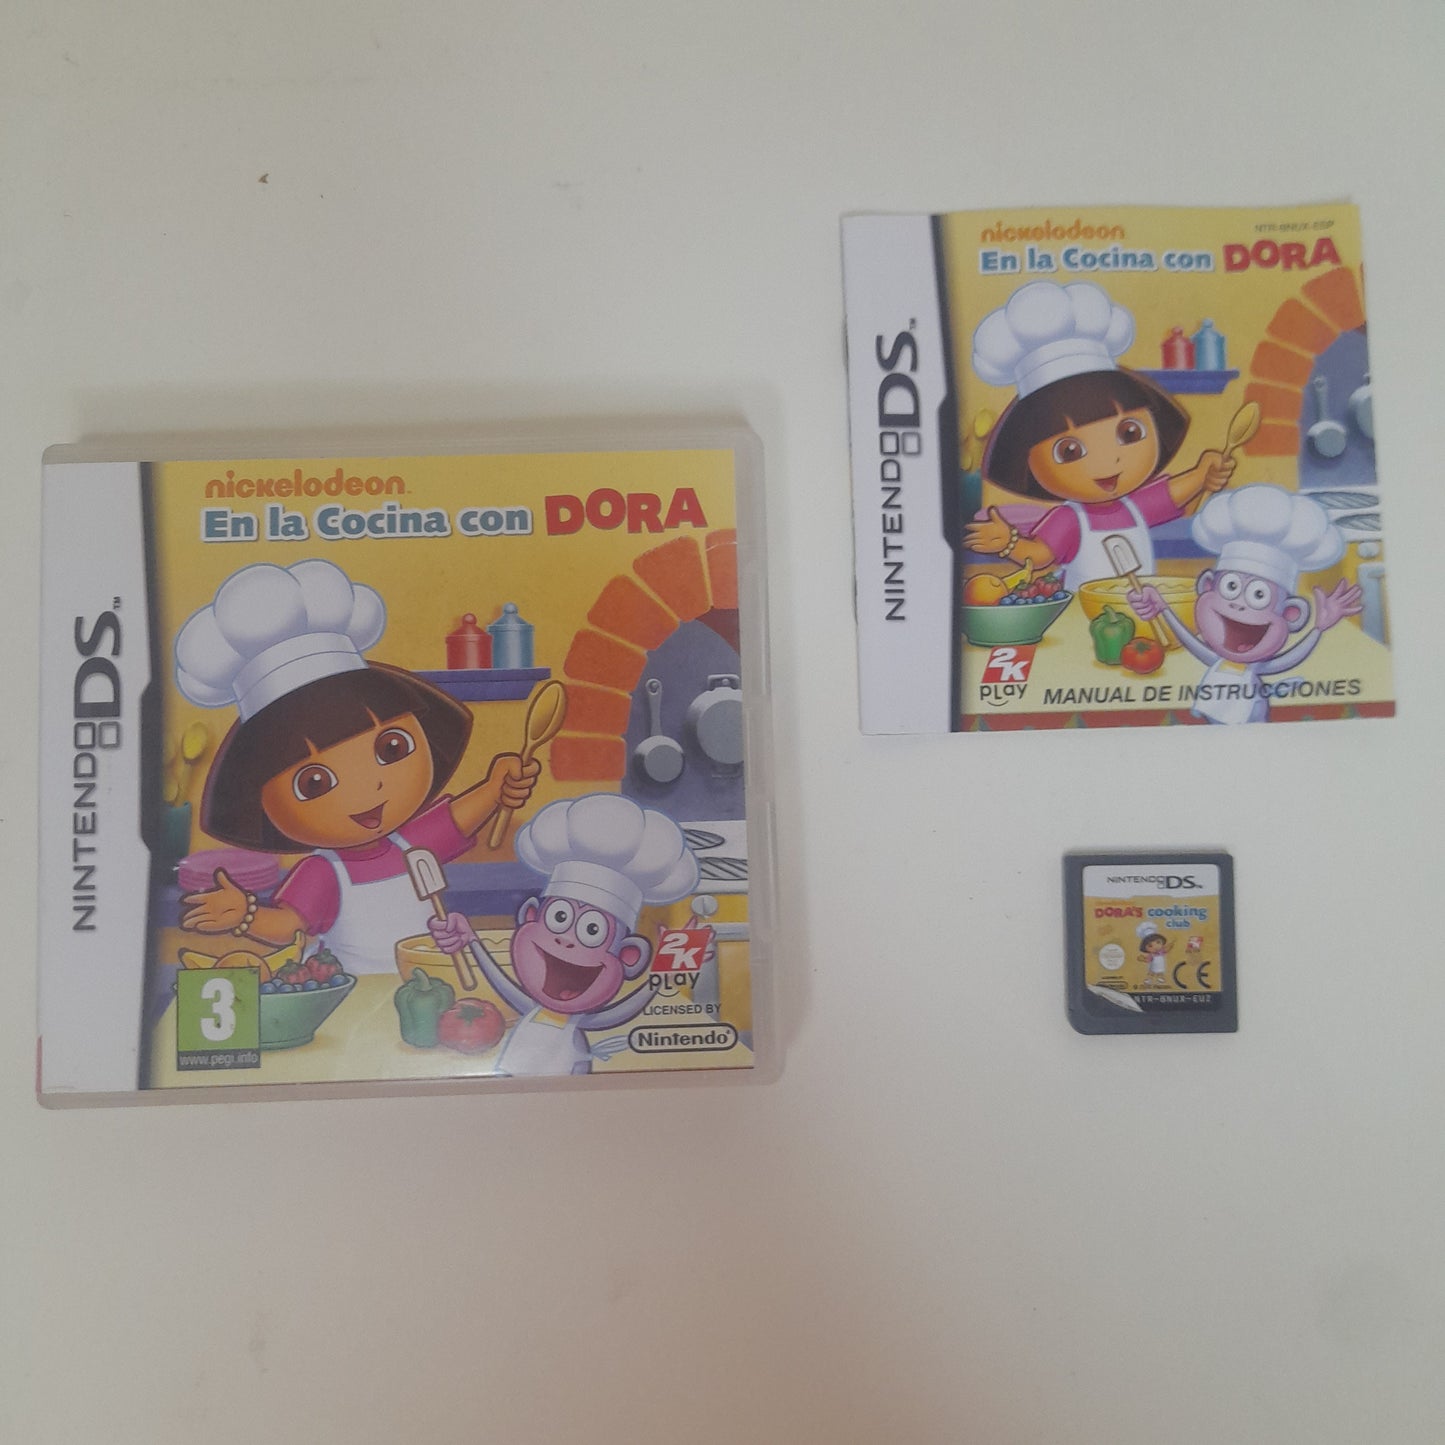 En La Cocina con Dora - Nintendo DS (ESP)